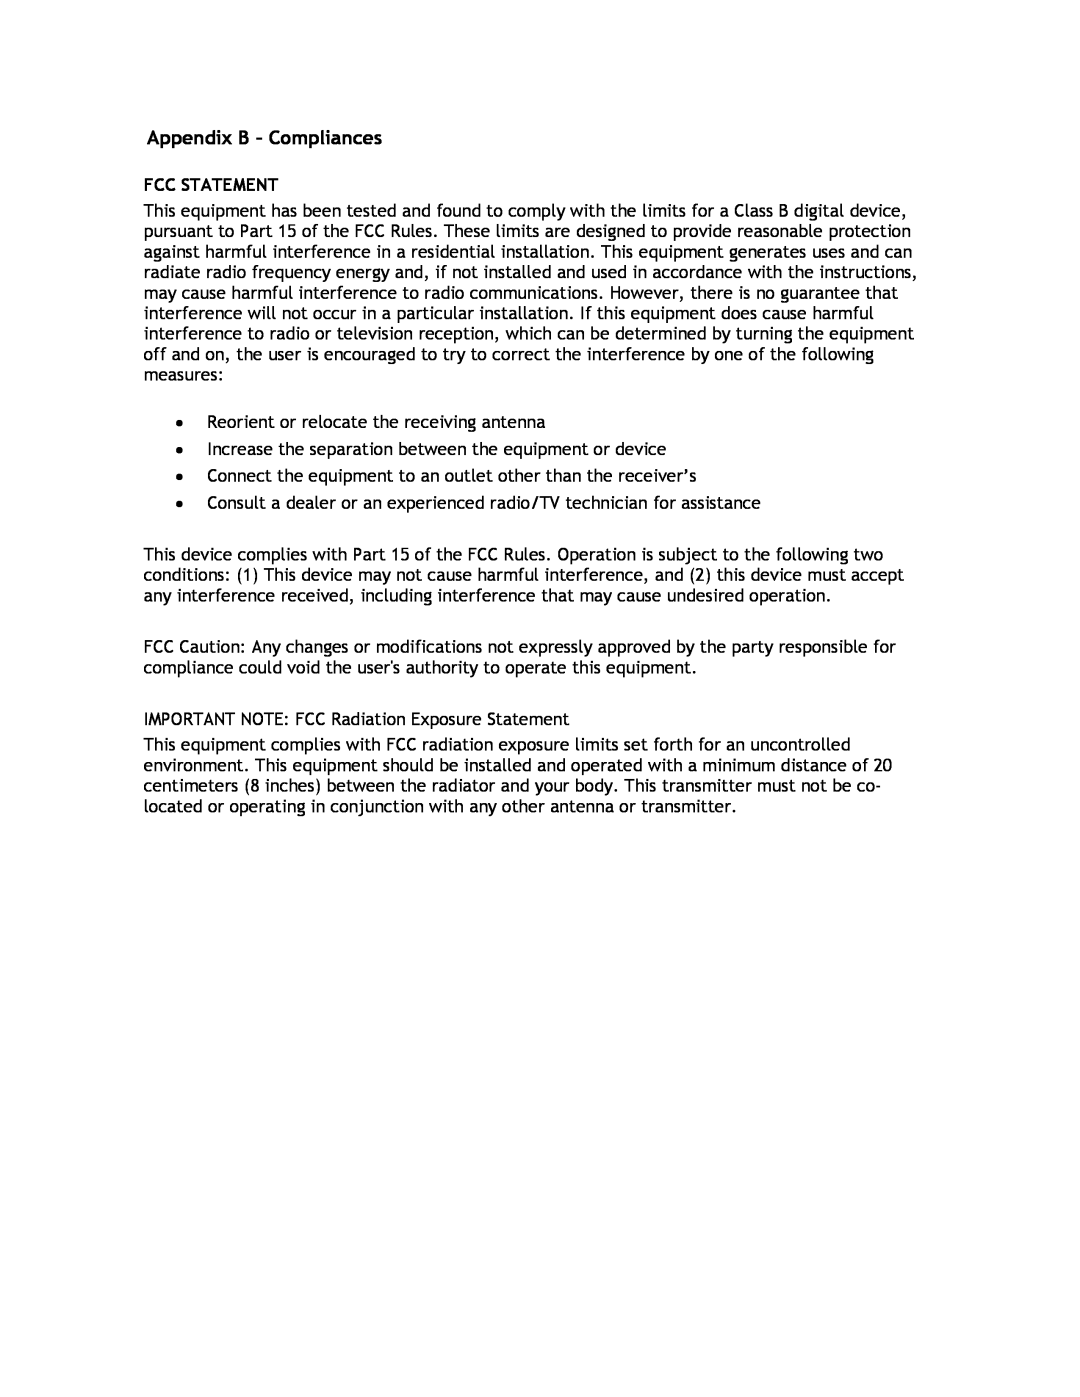 SMC Networks SMCHP1D-ETH manual Appendix B - Compliances, Fcc Statement 